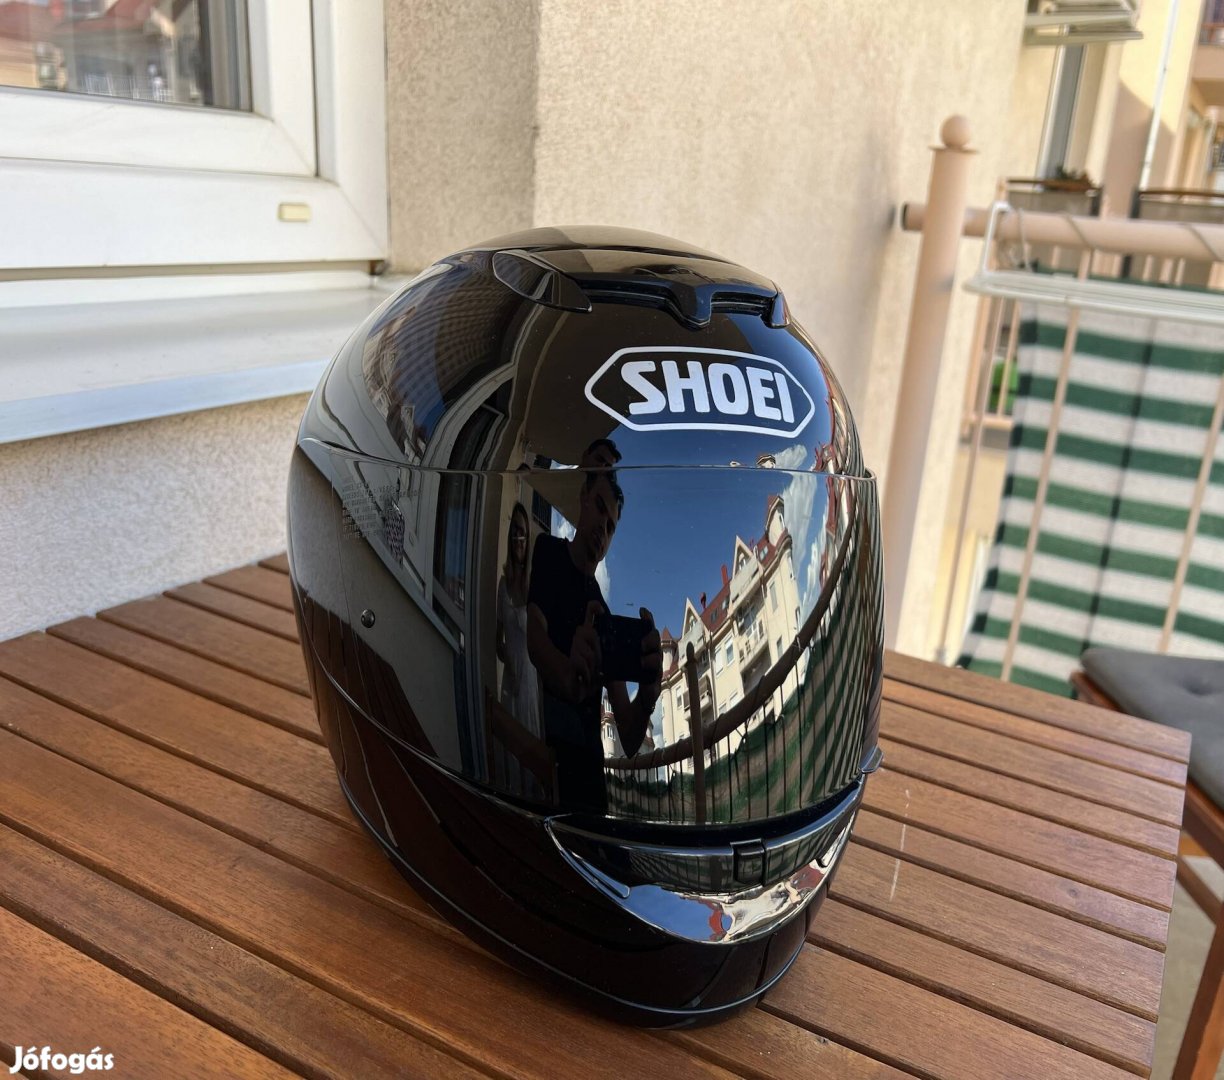 Shoei Safety Helmet Raid 2 Black